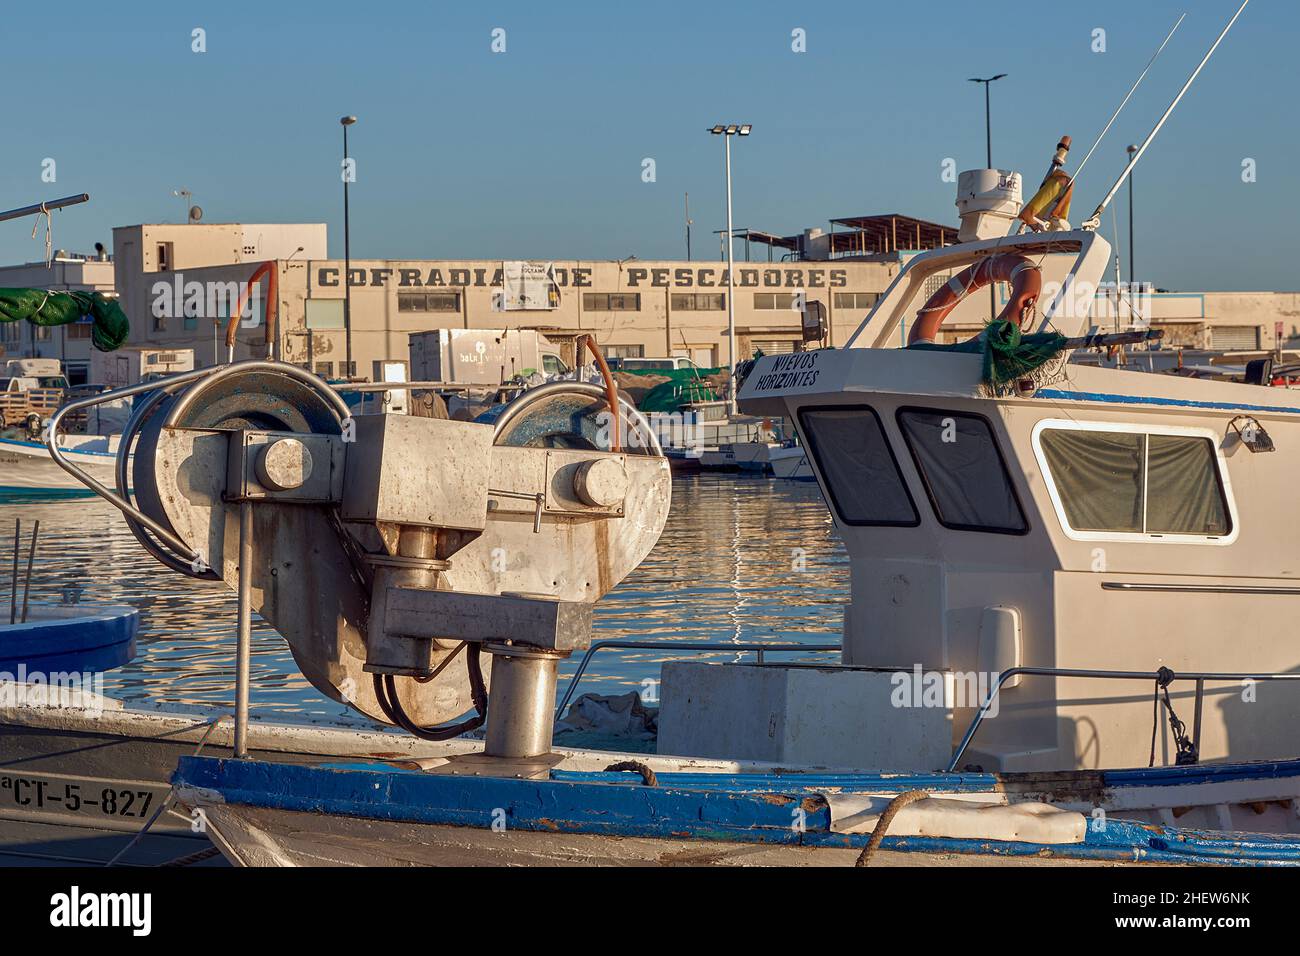 Bateau de pêche avec des poulies pour remorquer les filets dans le port de Santa Pola et la construction de la fraternité des pêcheurs en arrière-plan, Alicante, Espagne Banque D'Images